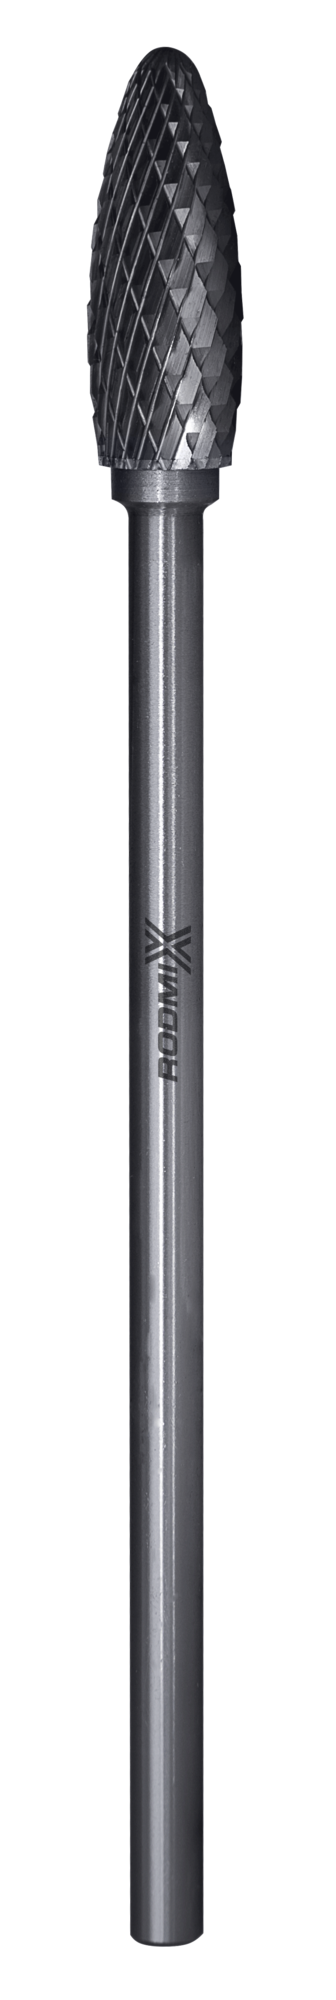 Твердосплавная борфреза по металлу тип H пламевидная удлиненная 10х25 L150 М6 мм двойная насечка 1